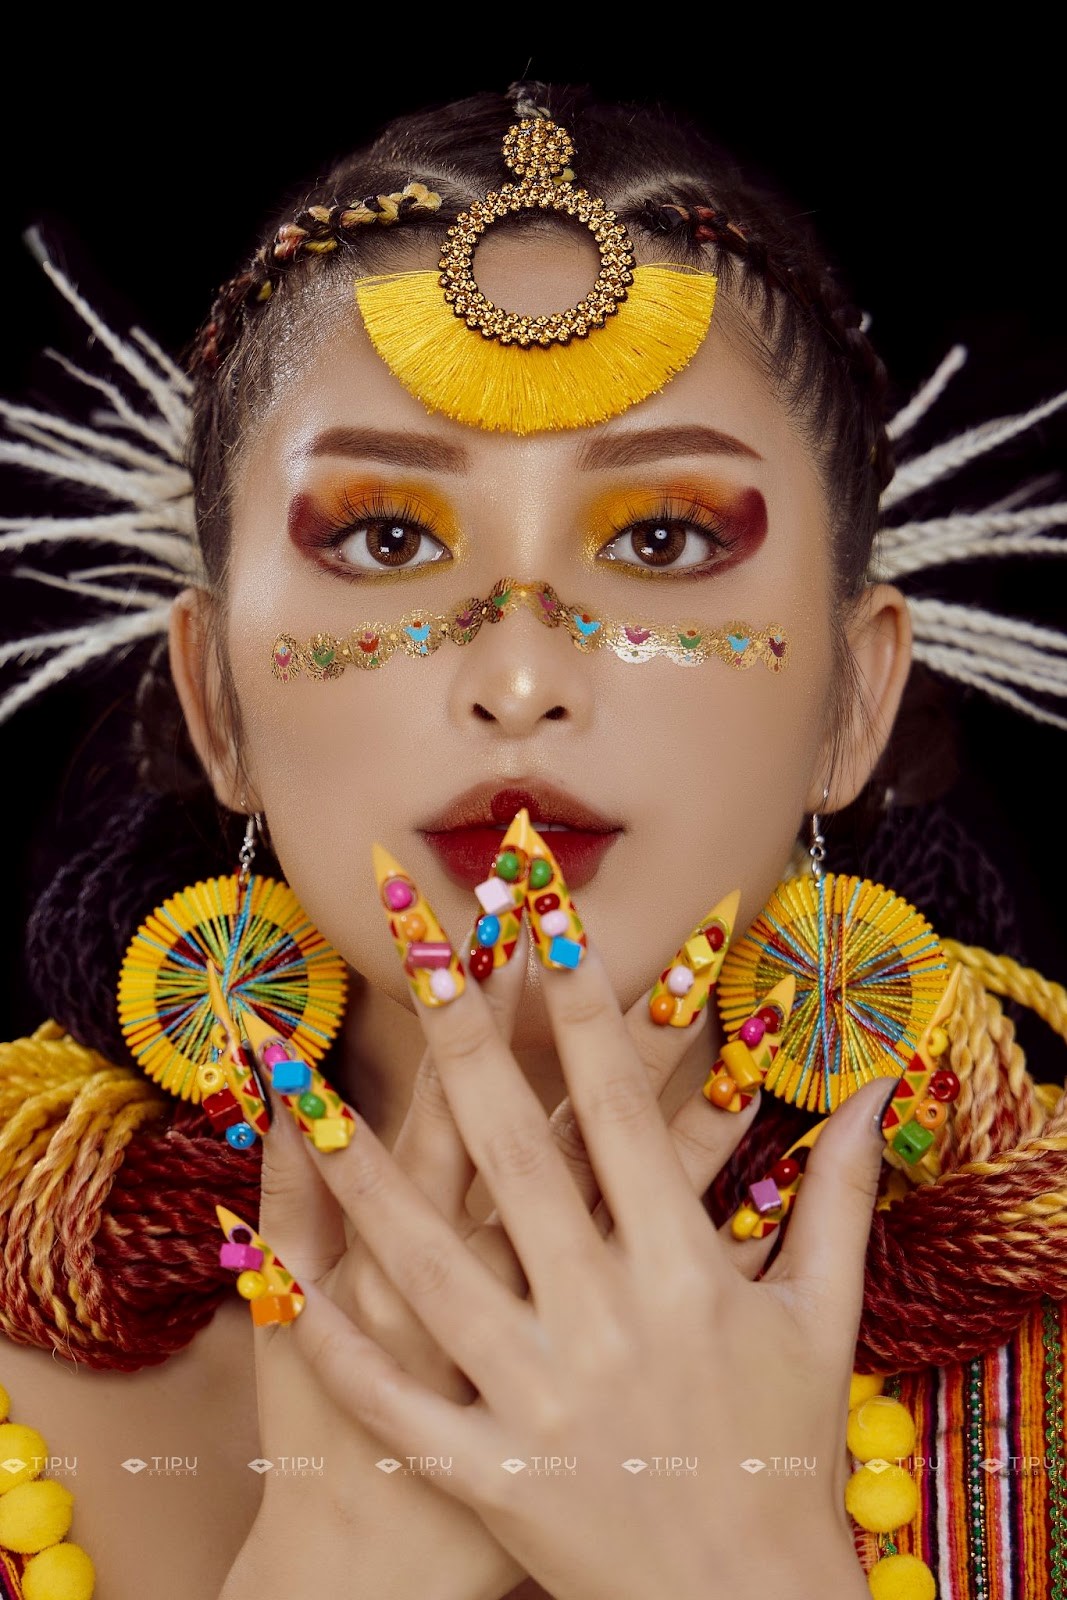 “Tân - Sắc - Tộc” Makeup Look Collection - Tipu Studio tôn vinh bản sắc văn hoá dân tộc-1